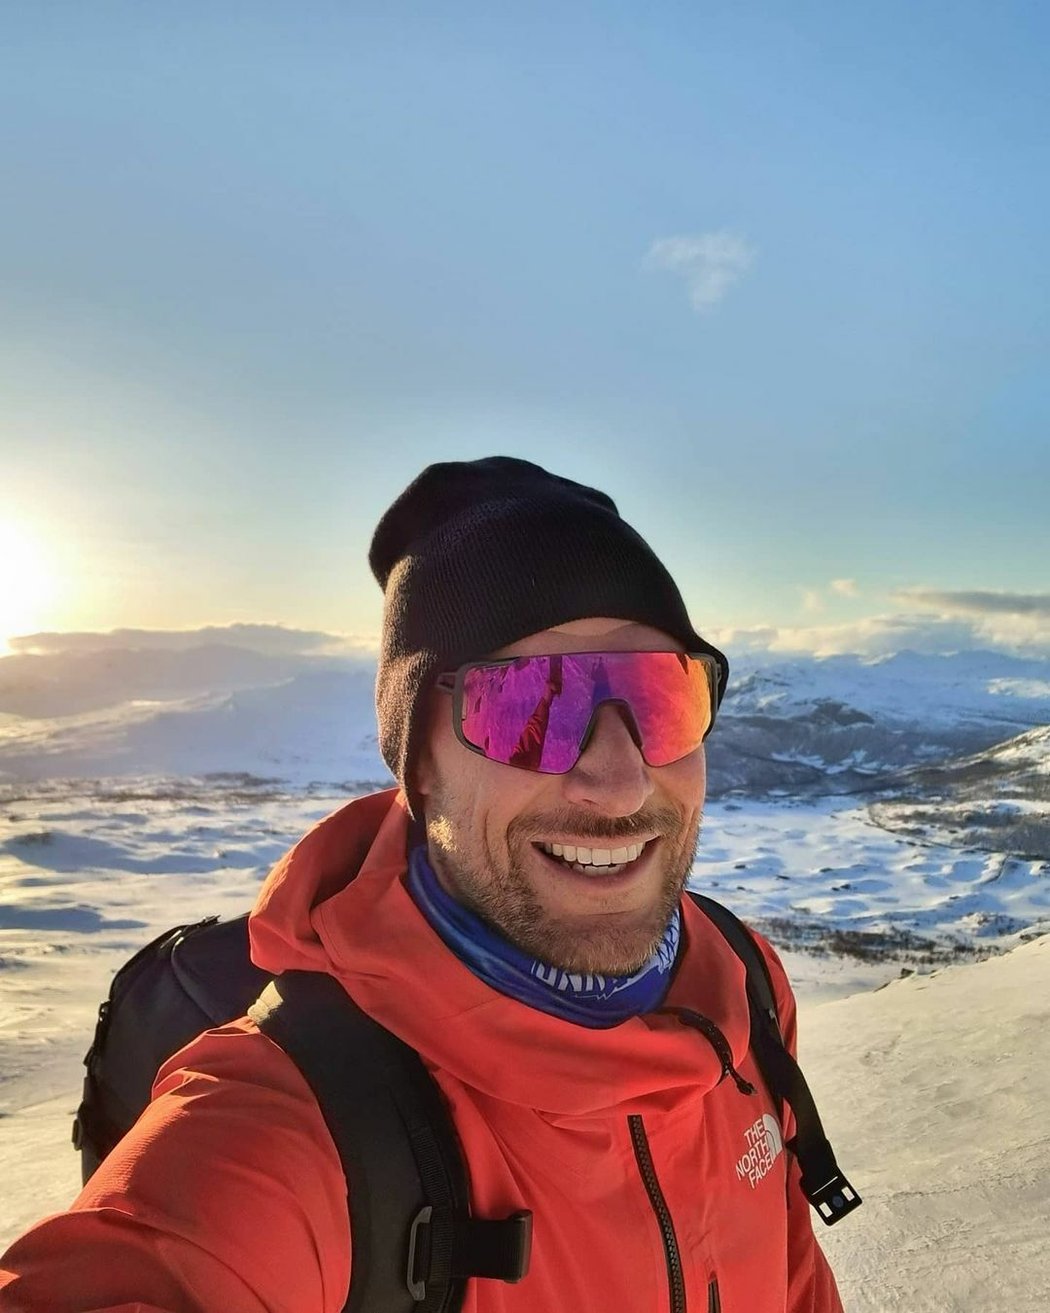 Bývalý vynikající norský lyžař Aksel Lund Svindal